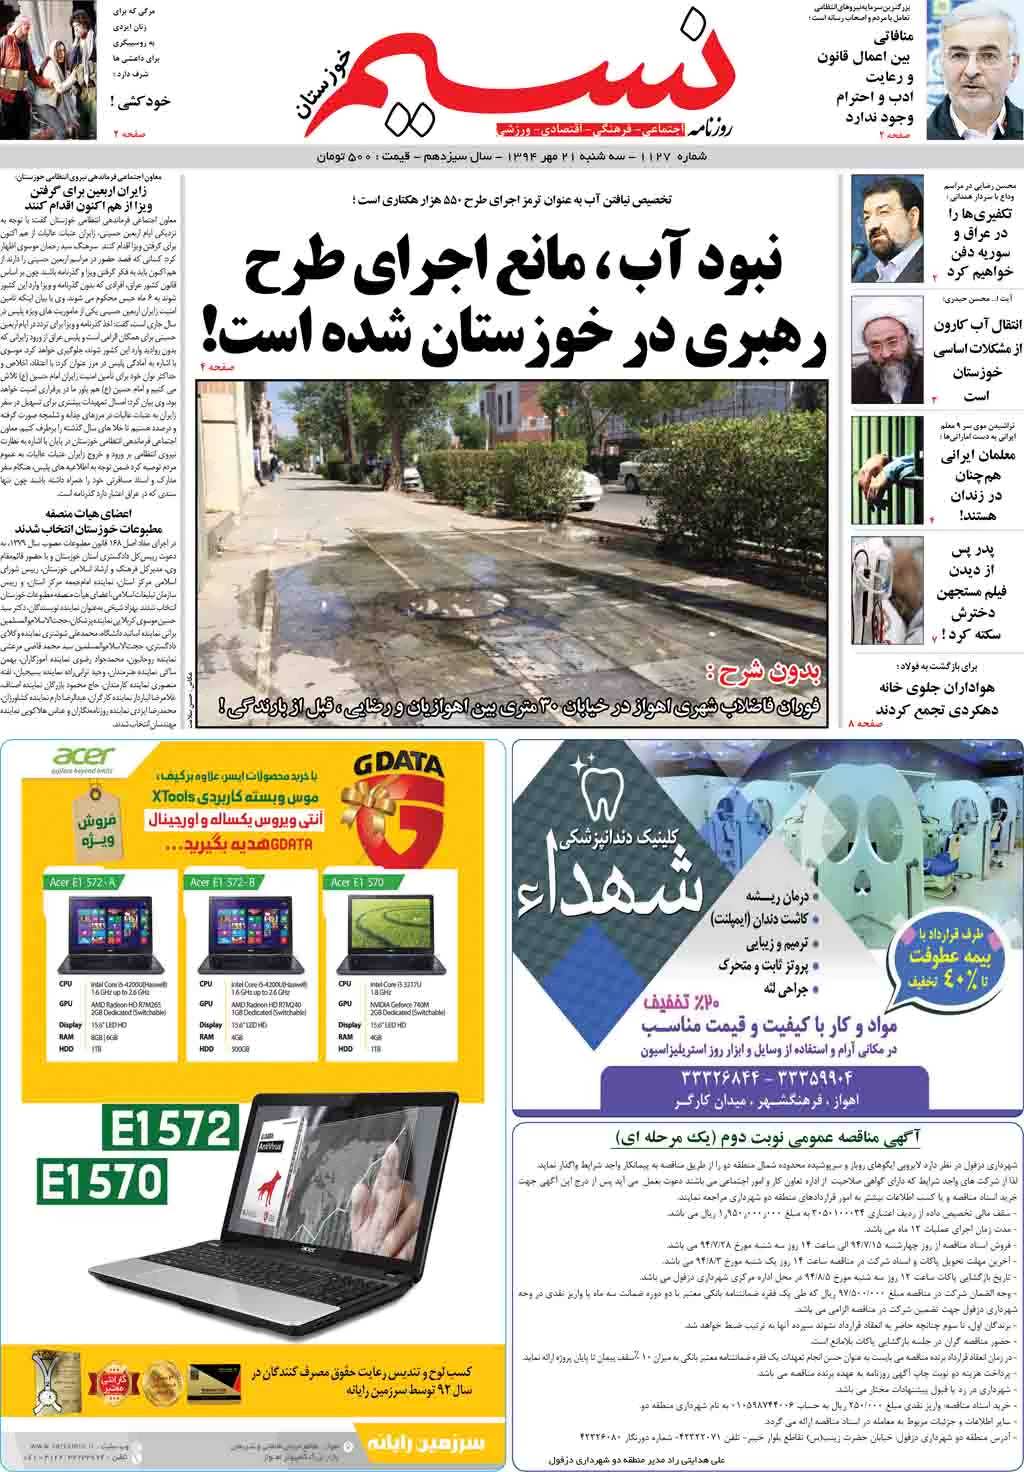 صفحه اصلی روزنامه نسیم شماره 1127